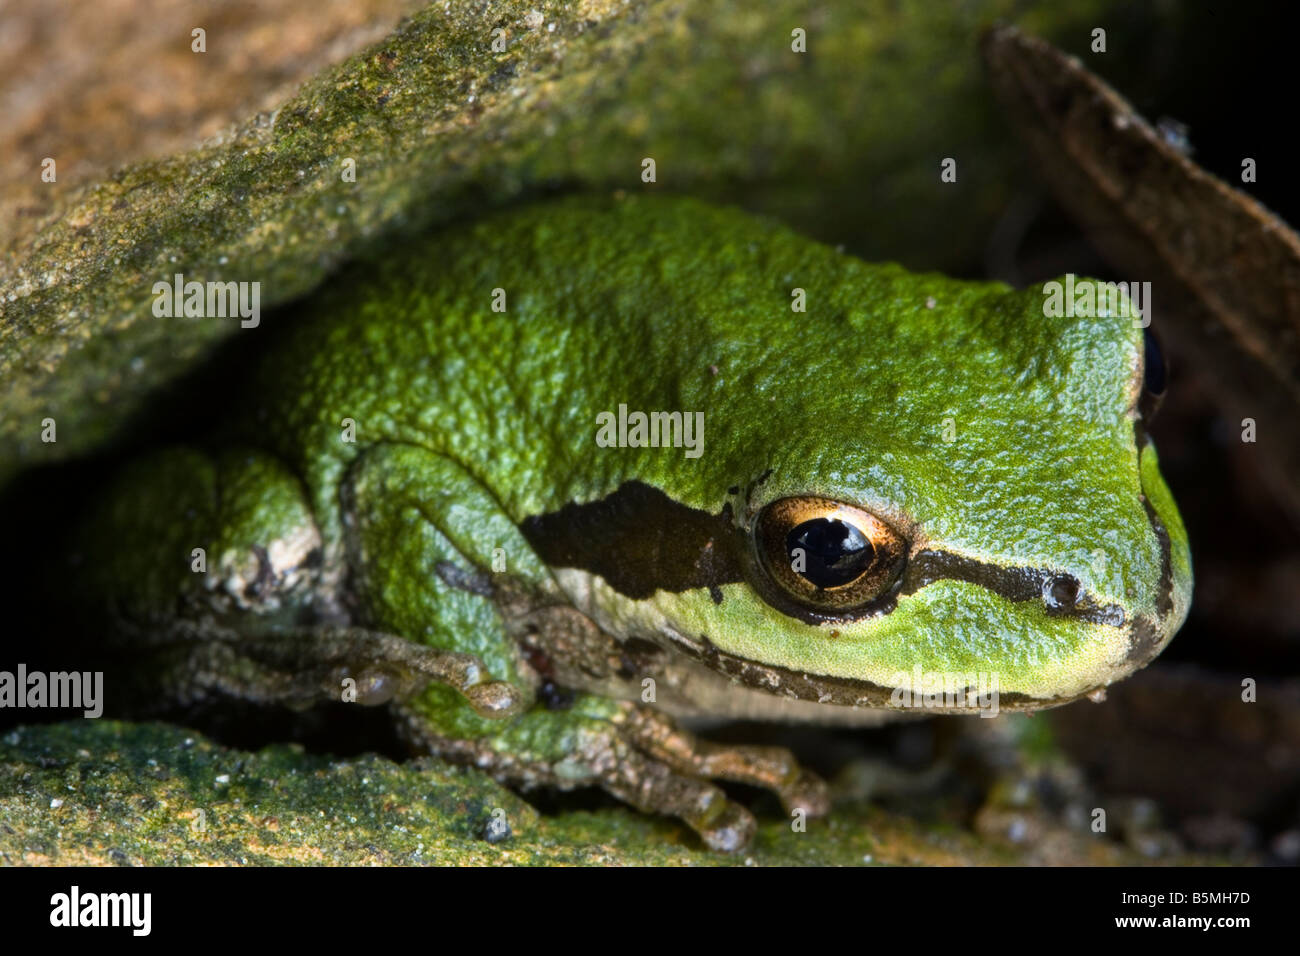 La rana arborícola del Pacífico, Hyla regilla, ranas, anfibios, Oregon, o rana de árbol, verde Foto de stock